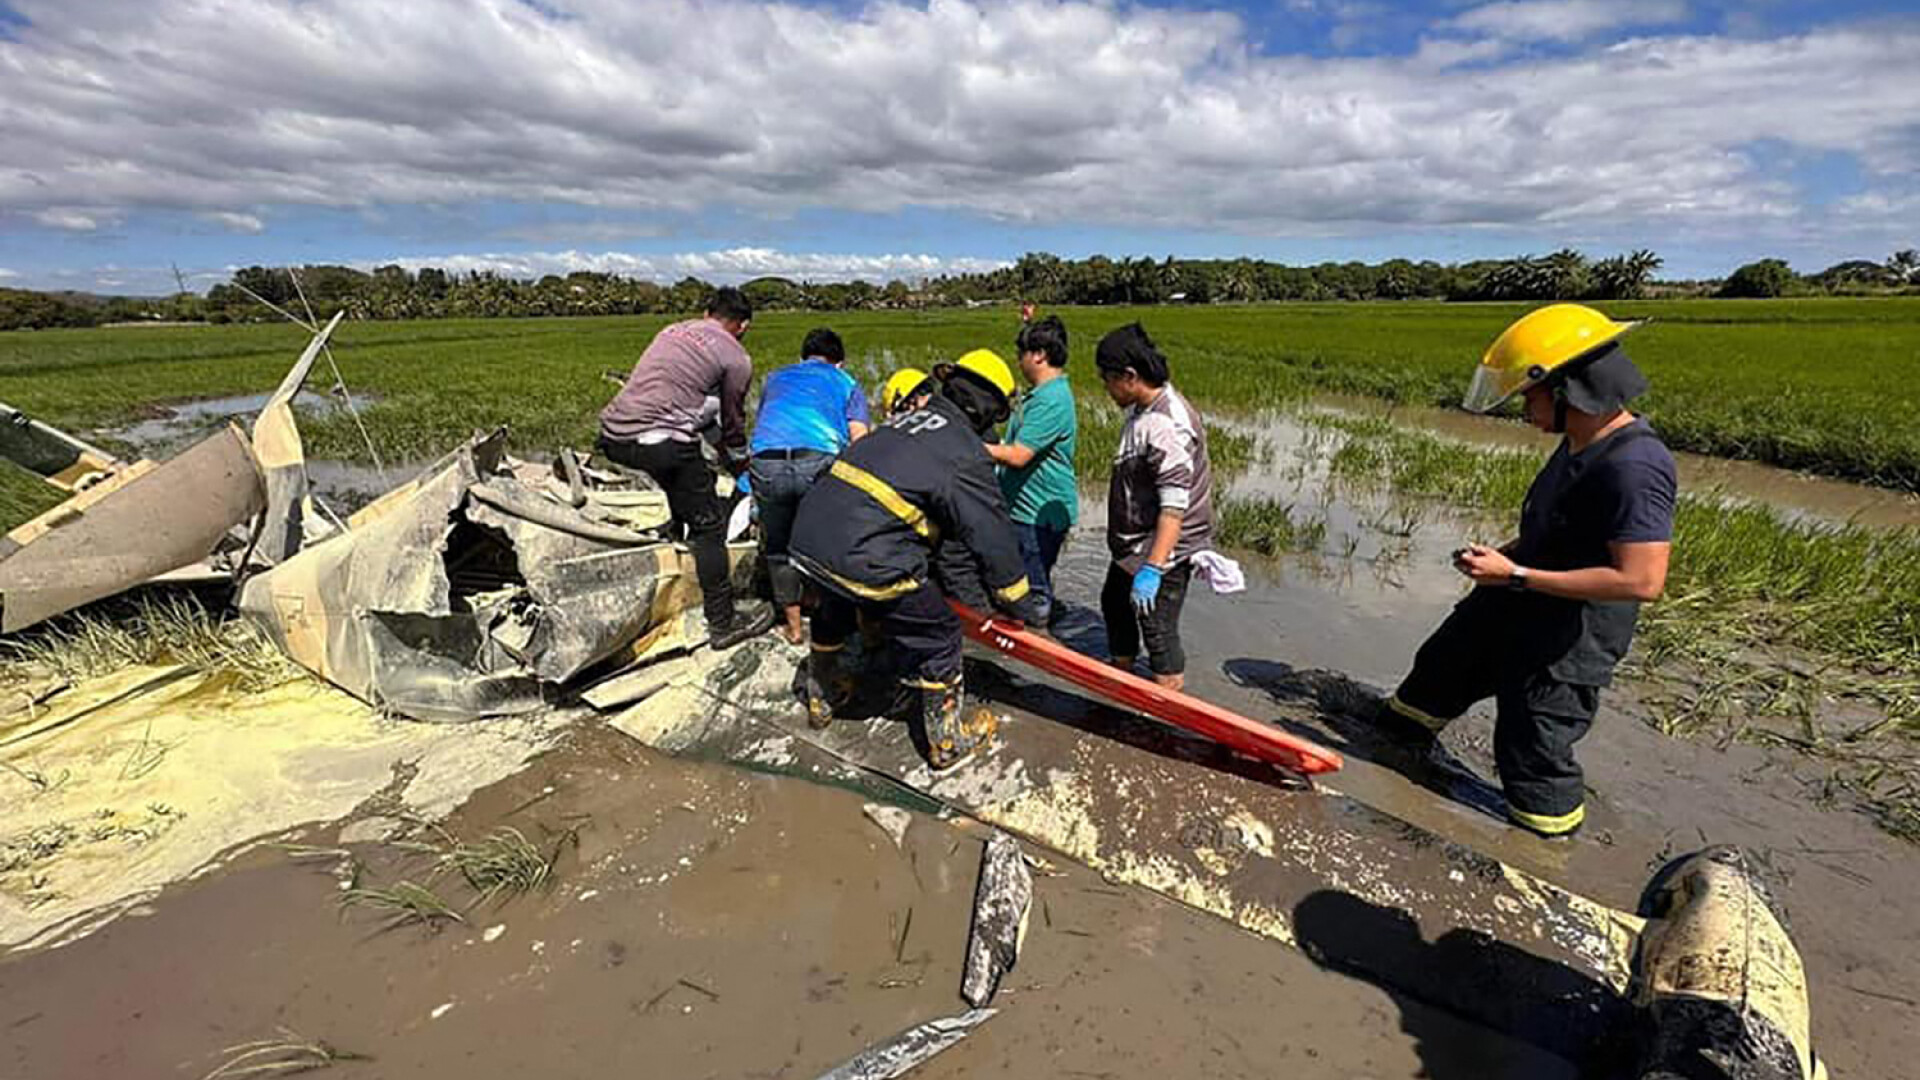 Avion prăbușit în Filipine